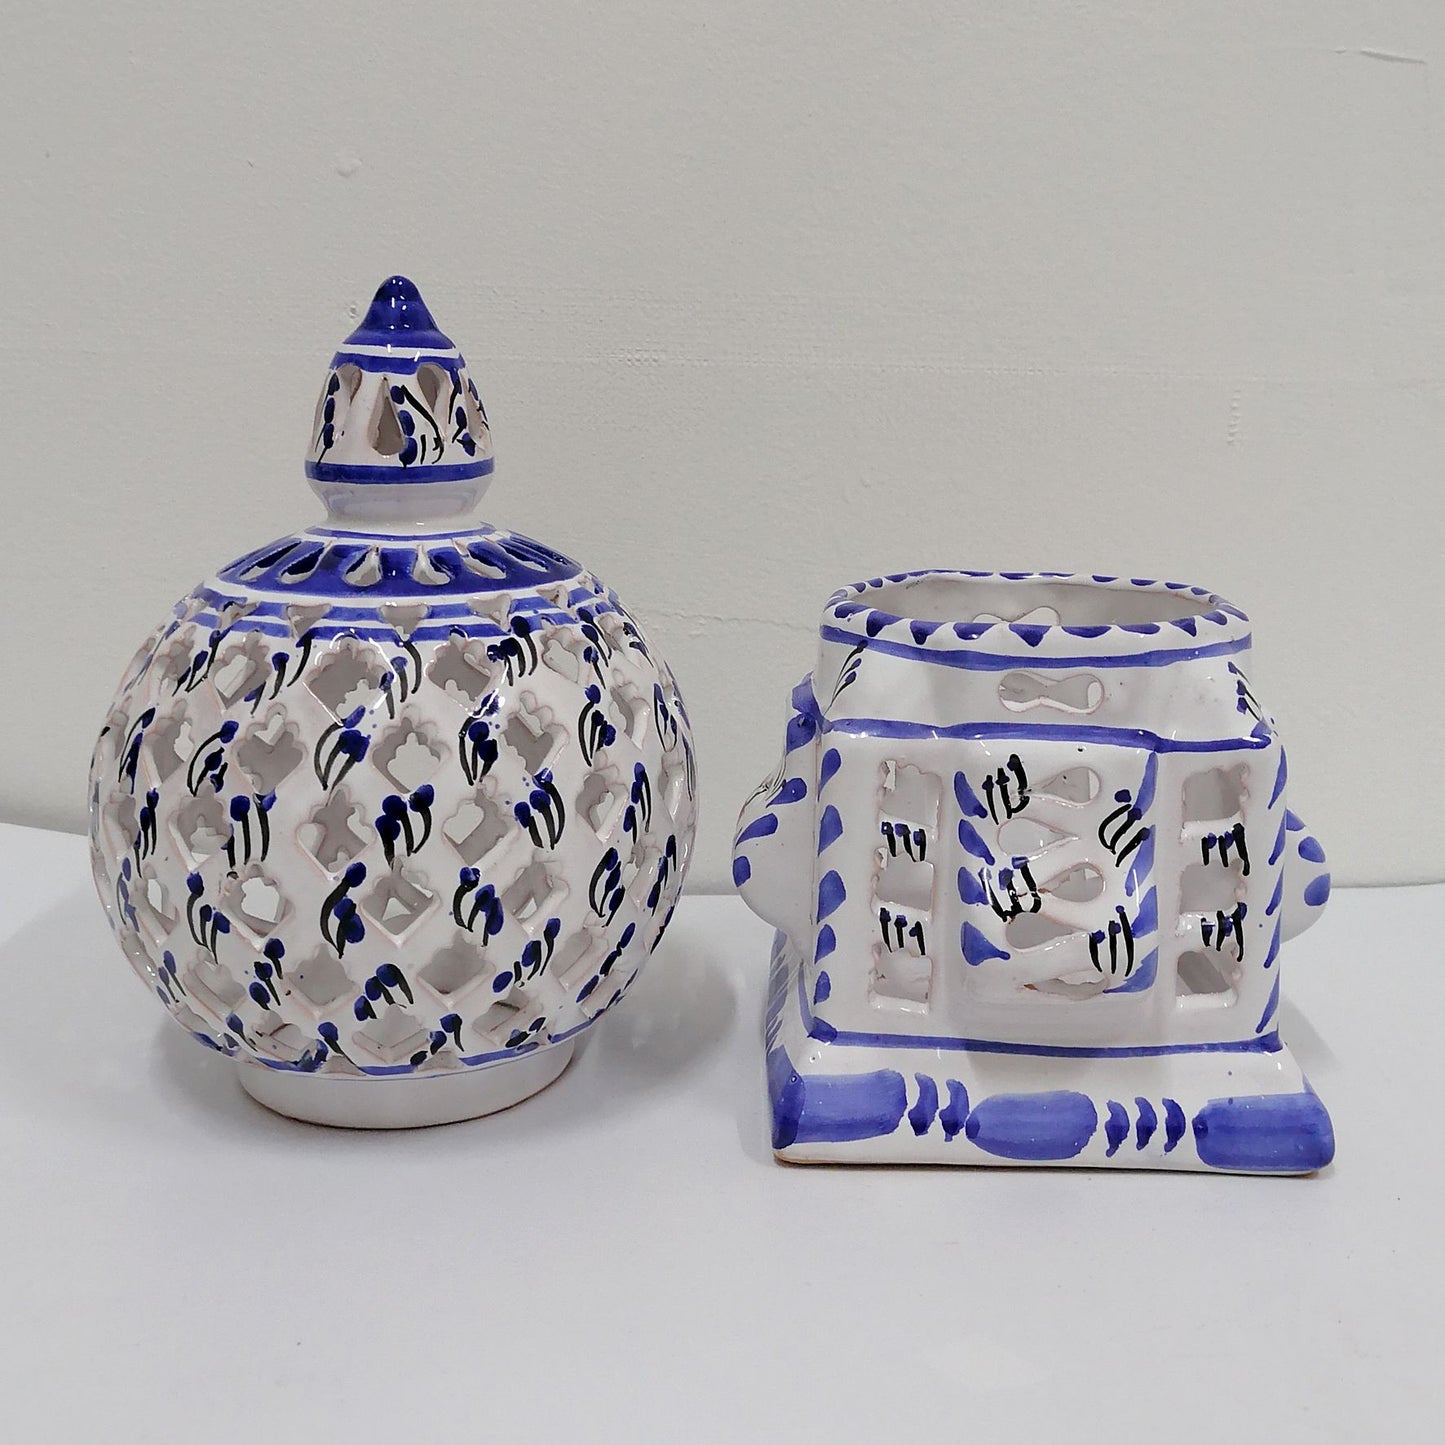 Arredamento Etnico Lanterna Lampada Ceramica Fatta A Mano Tunisina 2402211206